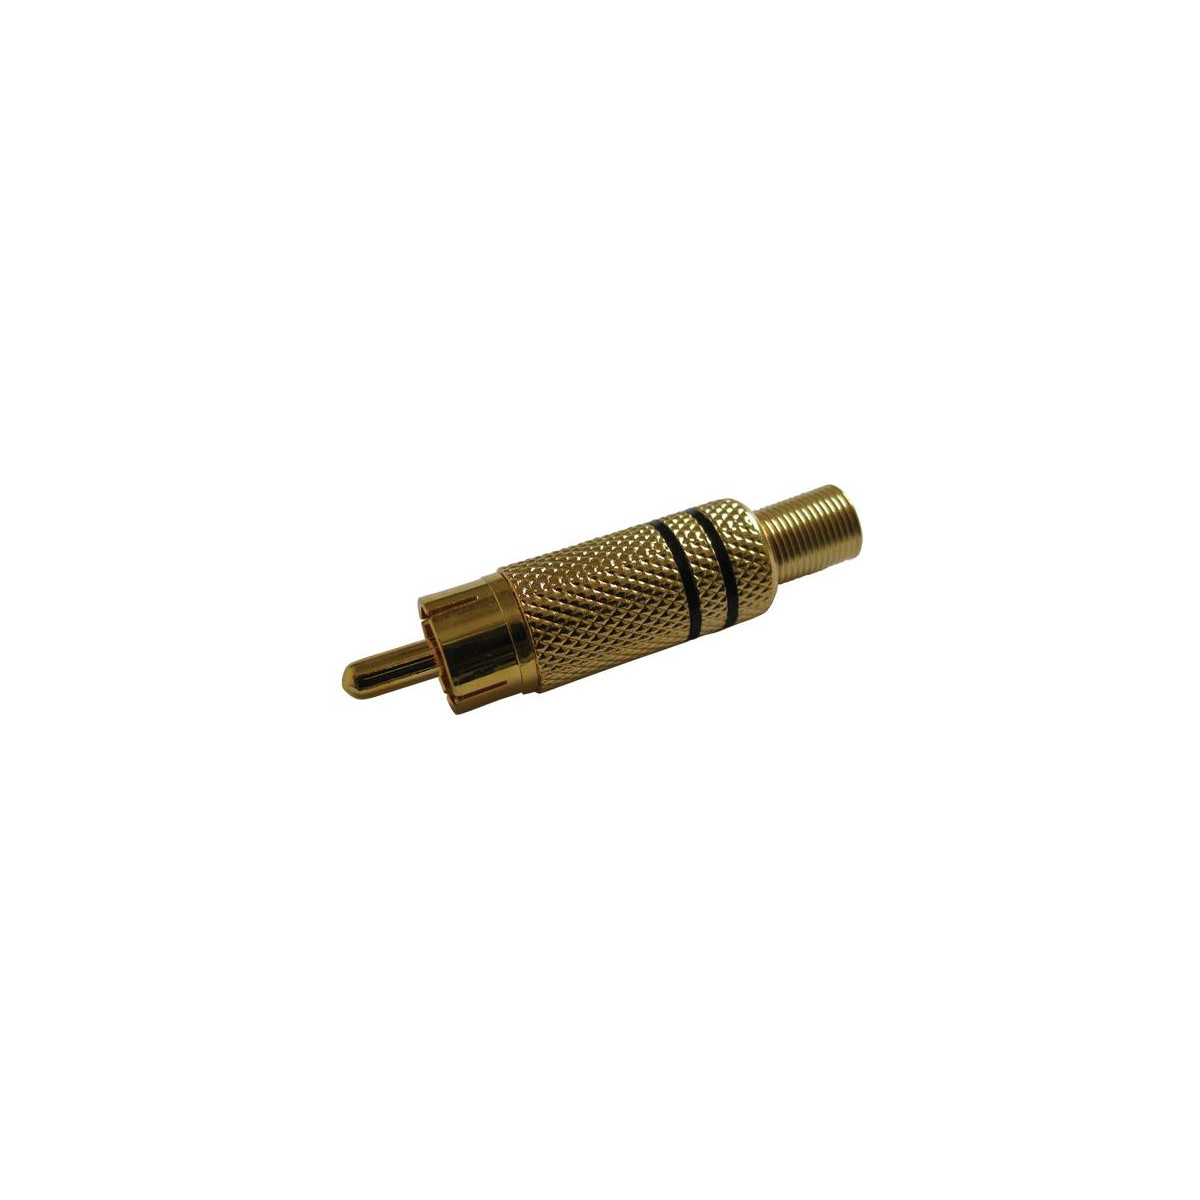 More about Konektor CINCH kabel kov zlatý černý